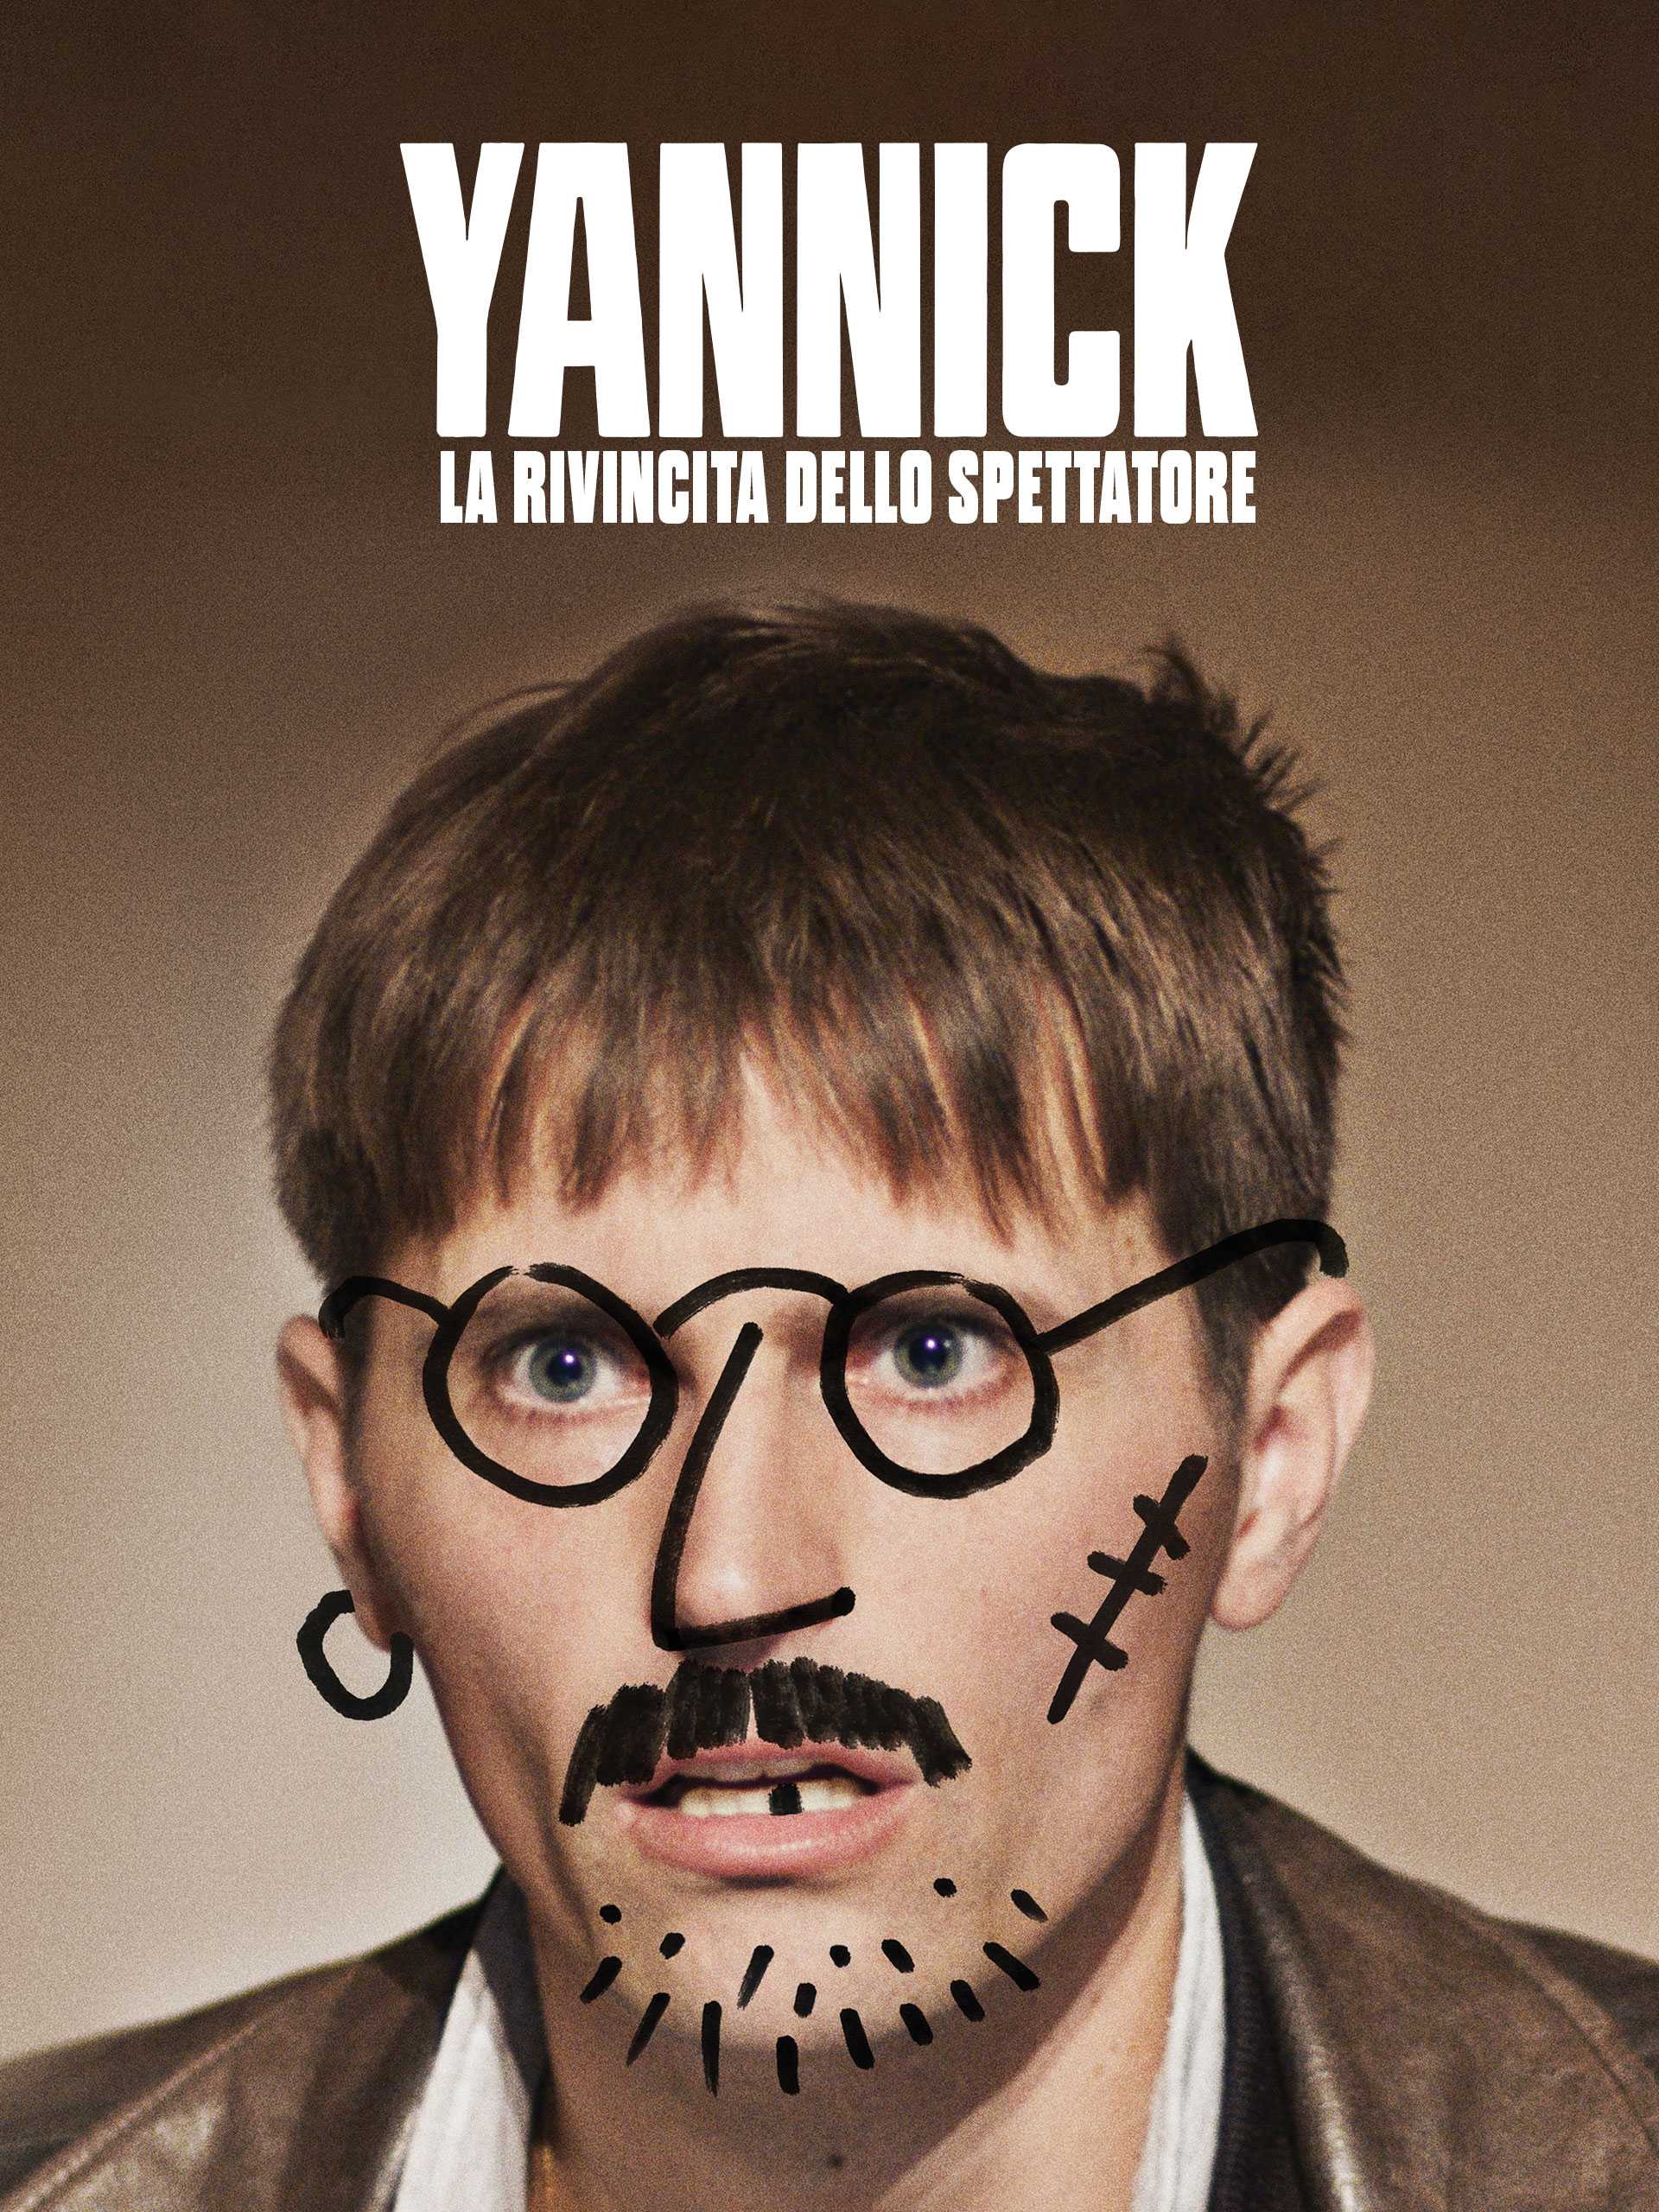 Yannick - La rivincita dello spettatore in streaming